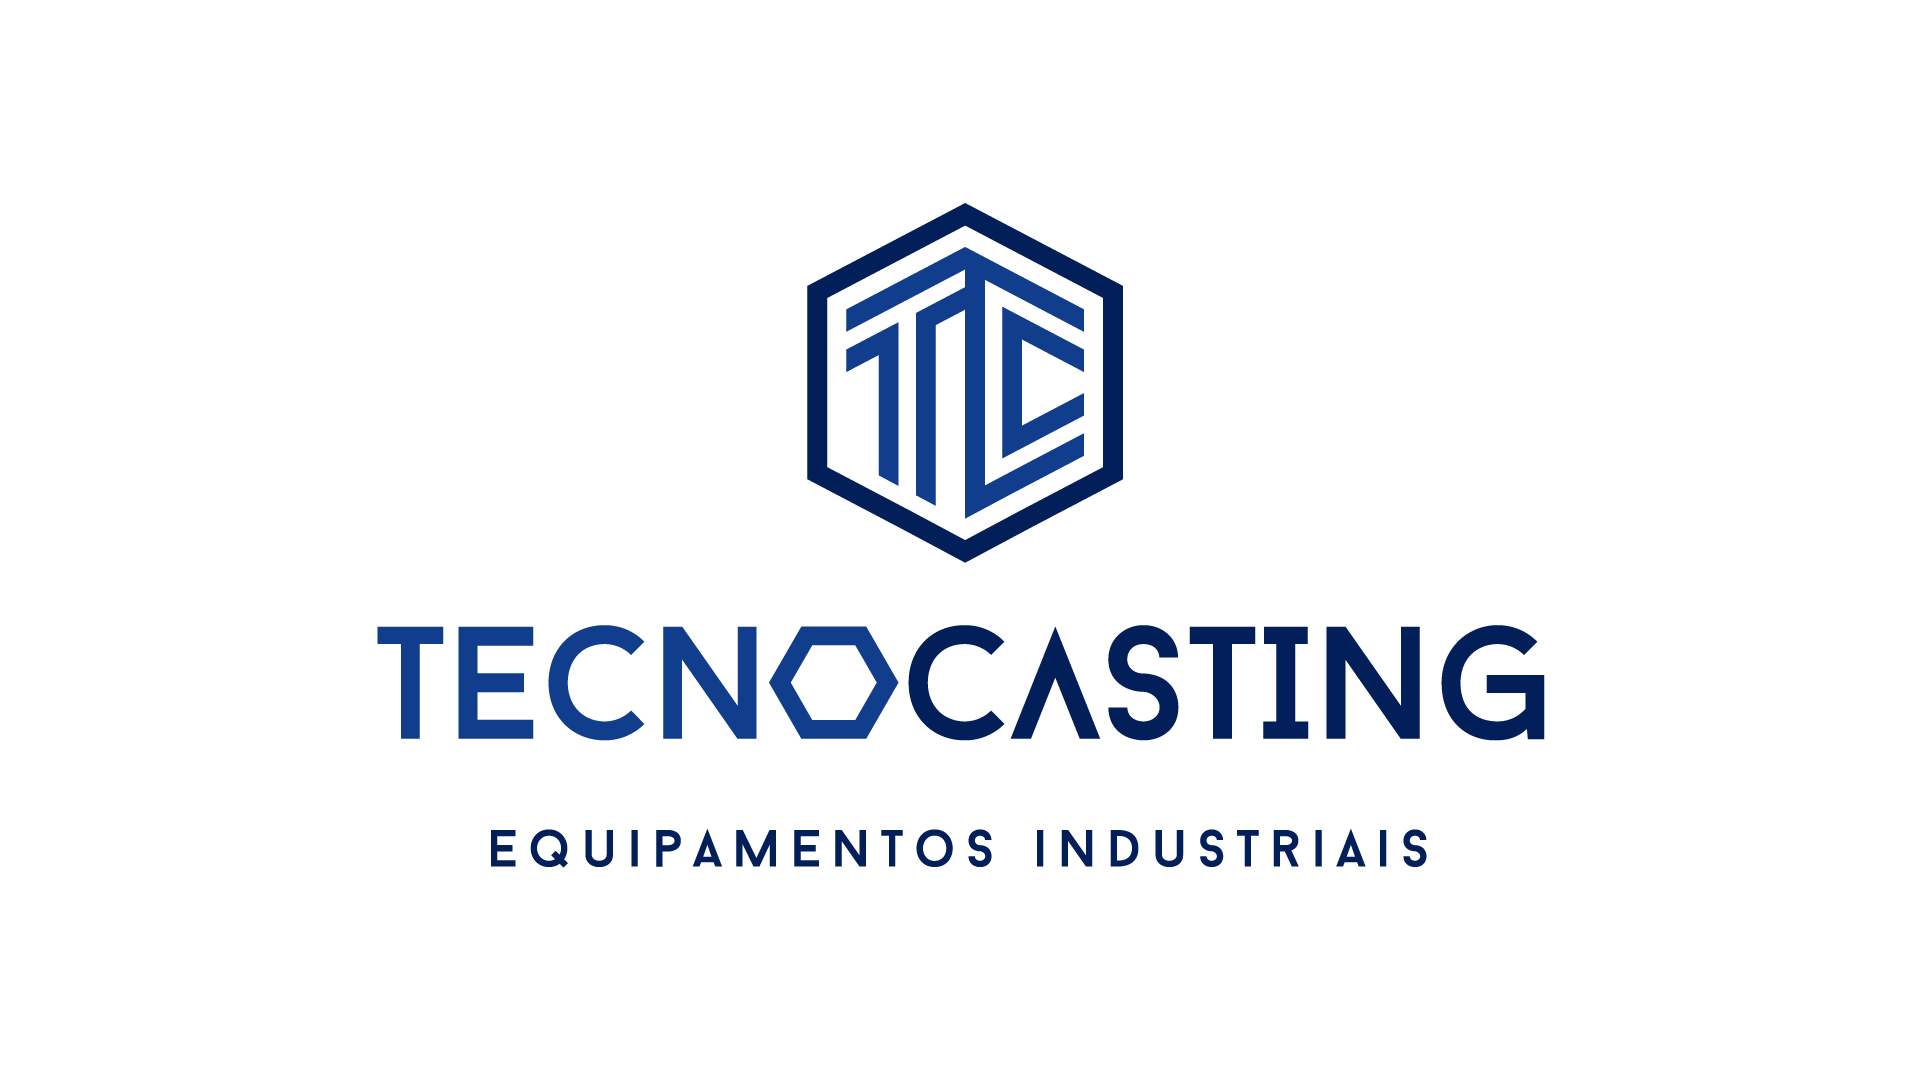 Equipamentos industriais - Tecno casting